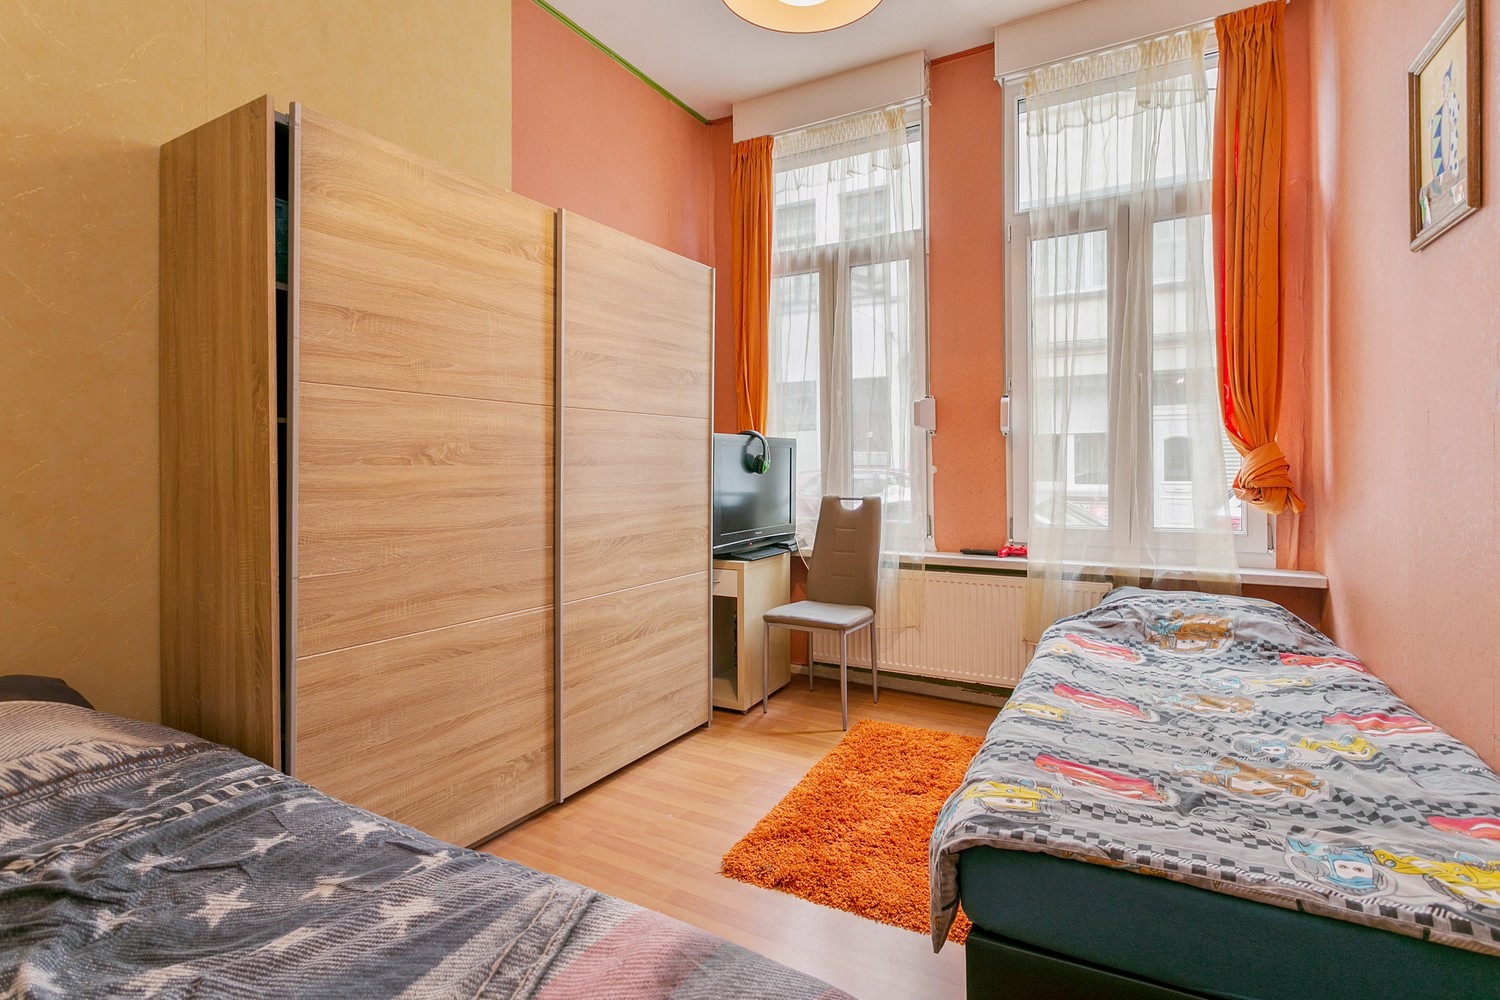 Opbrengsthuis met 5 slaapkamers & koertje in Antwerpen! afbeelding 10